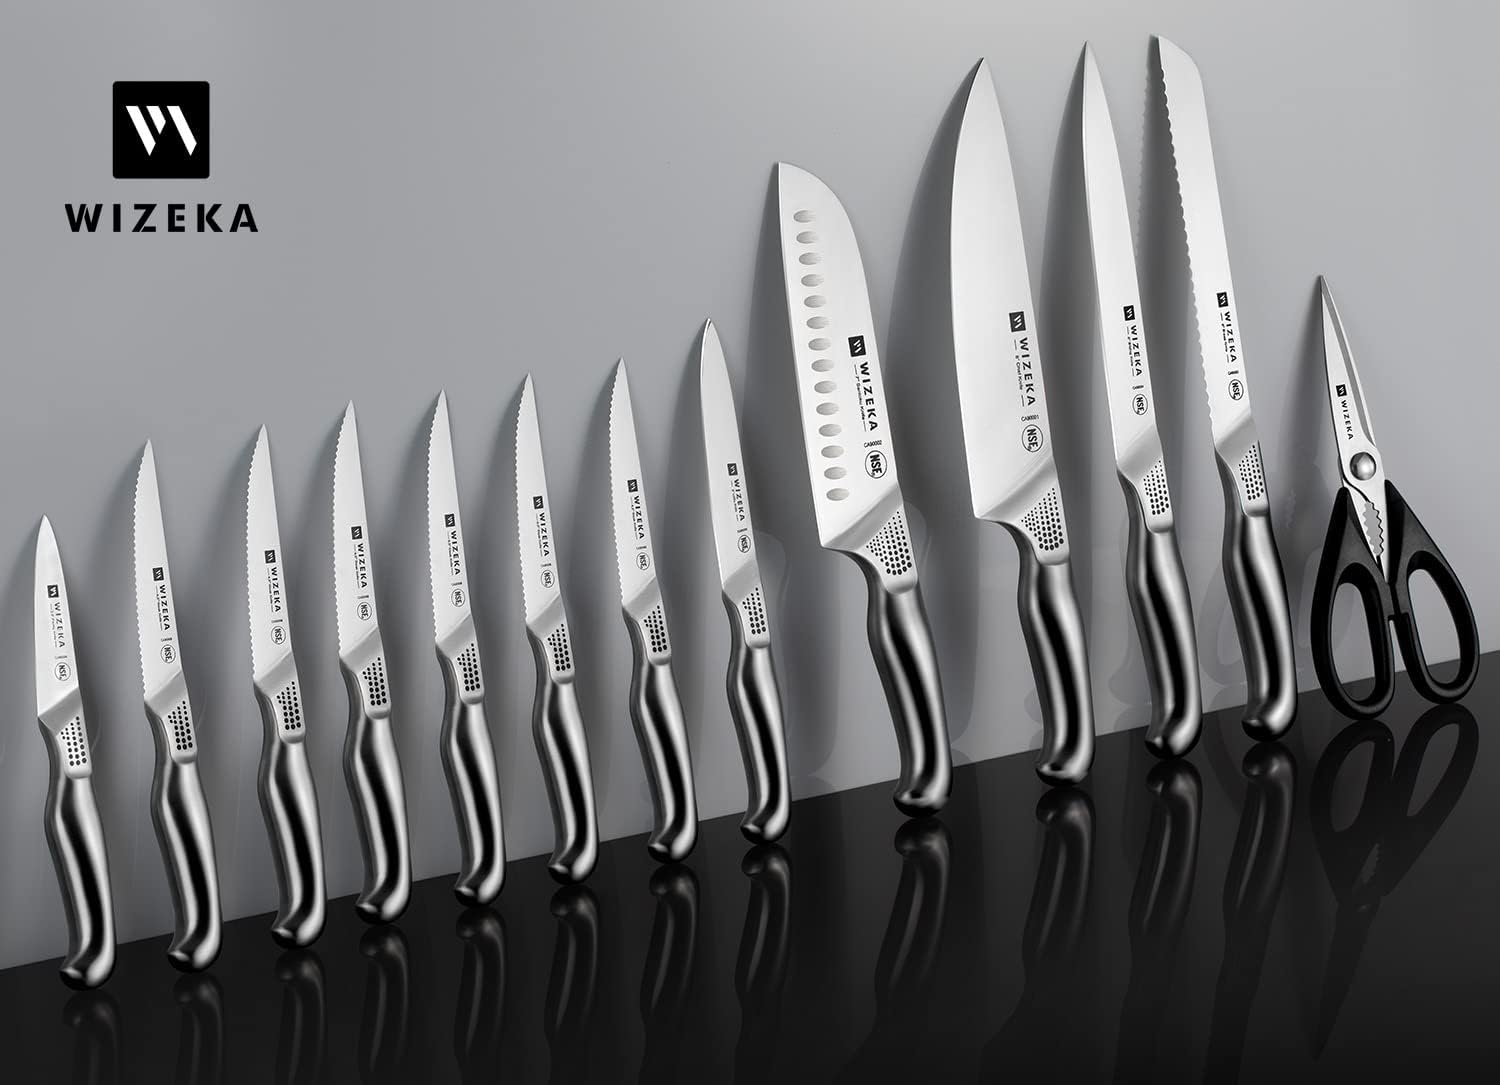 WIZEKA Kitchen Knife Set with Block NSF Certified 15pcs German Steel, New